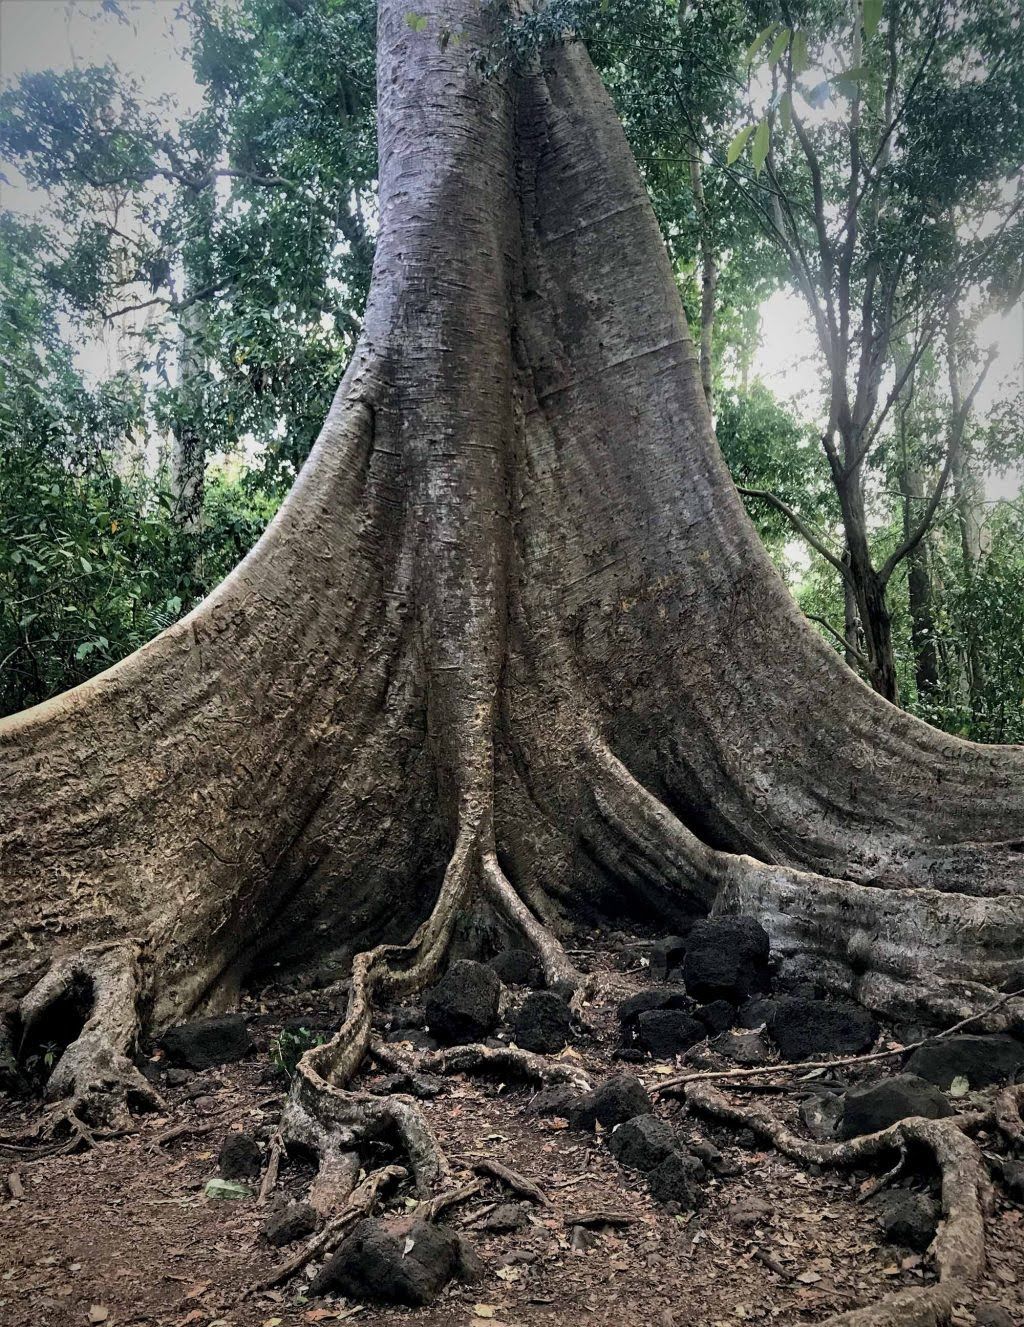 tự nhiên cây Tung 400 năm tuổi